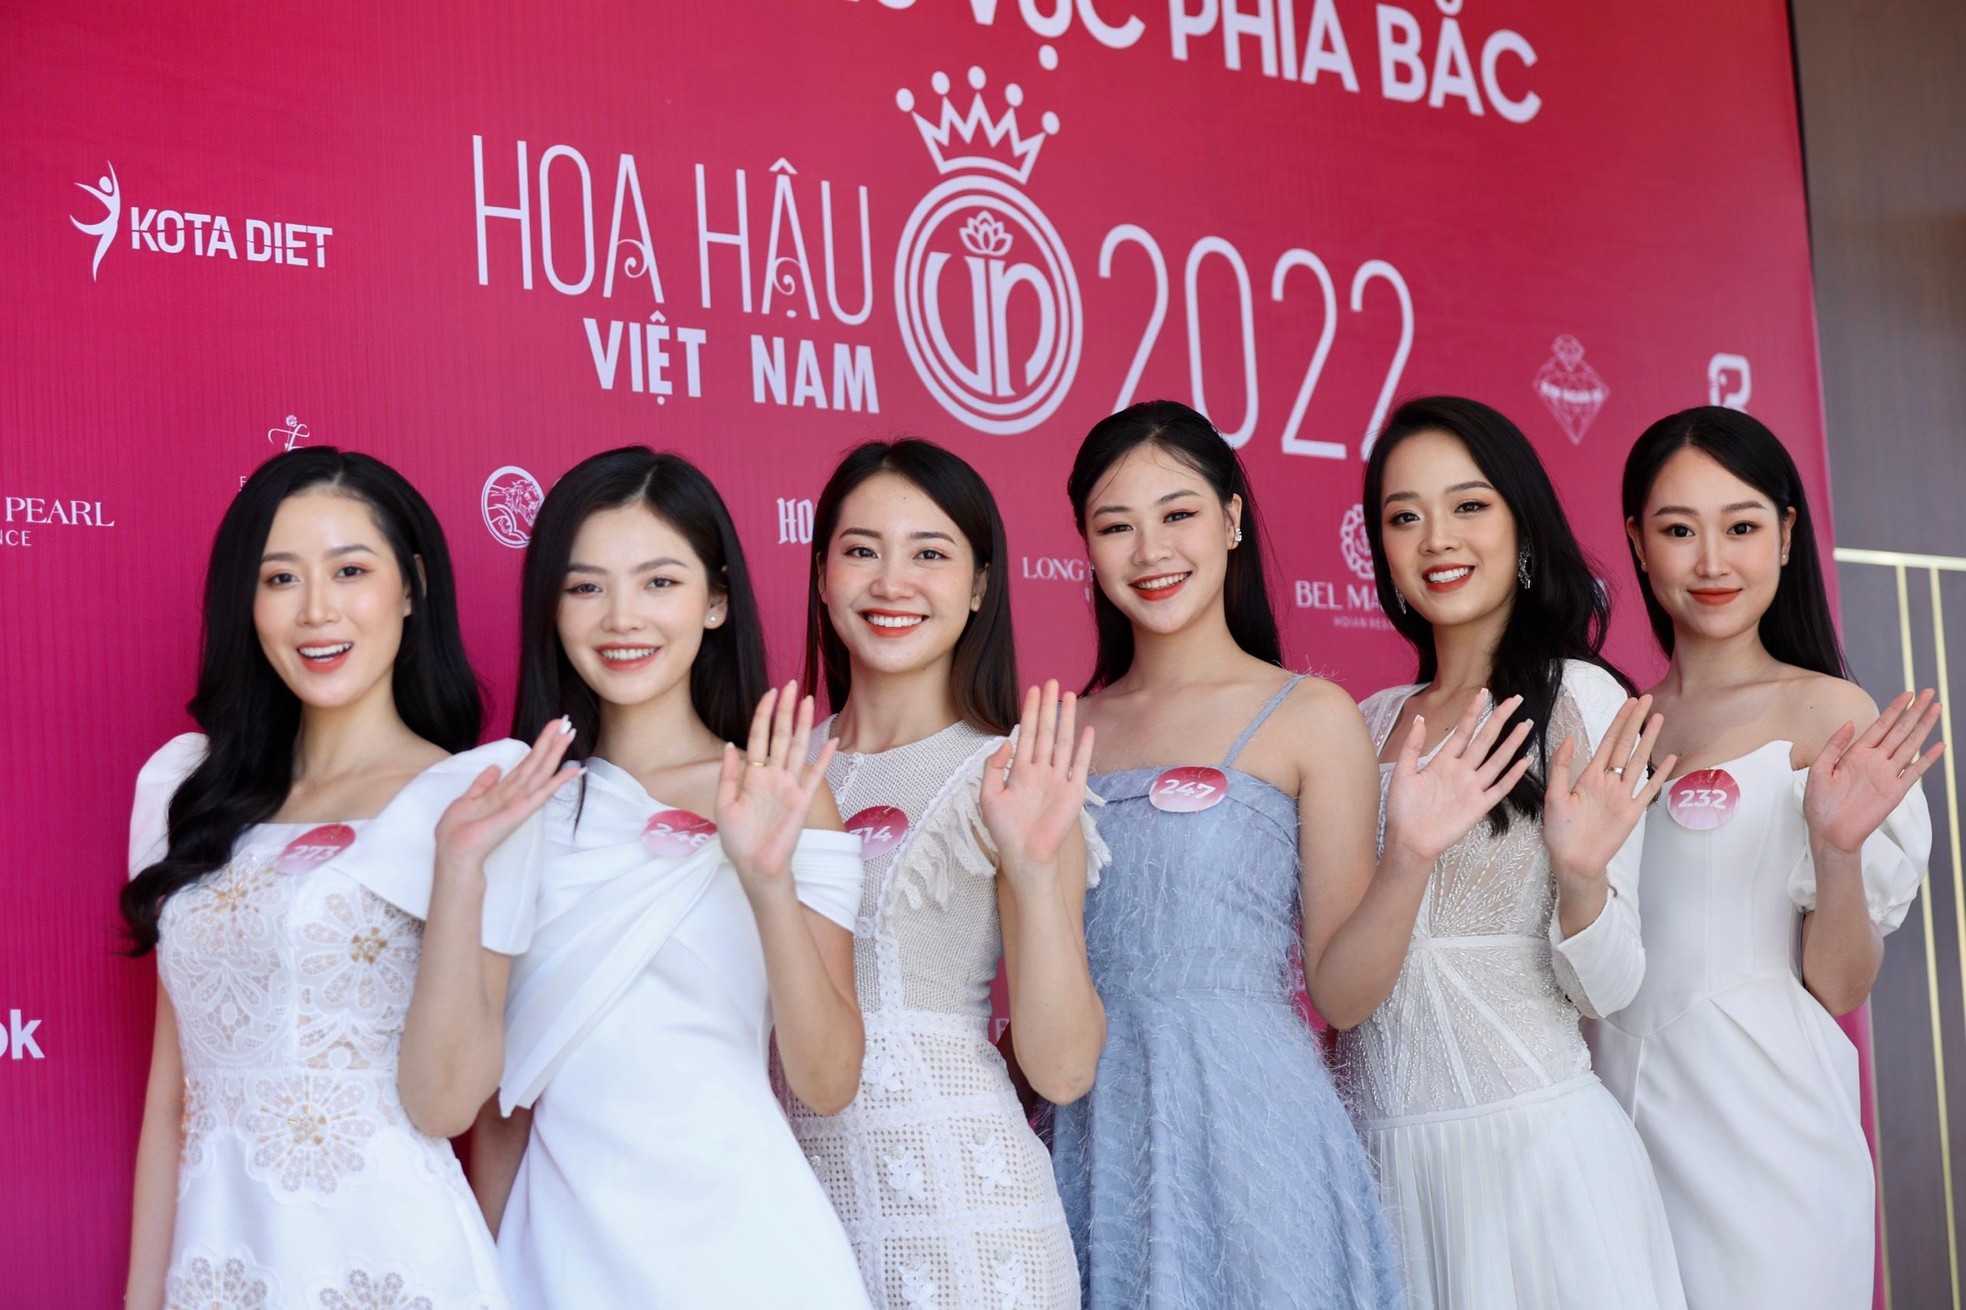 4 cô gái được đặc cách ở Hoa hậu Việt Nam 2022 - Ảnh 10.